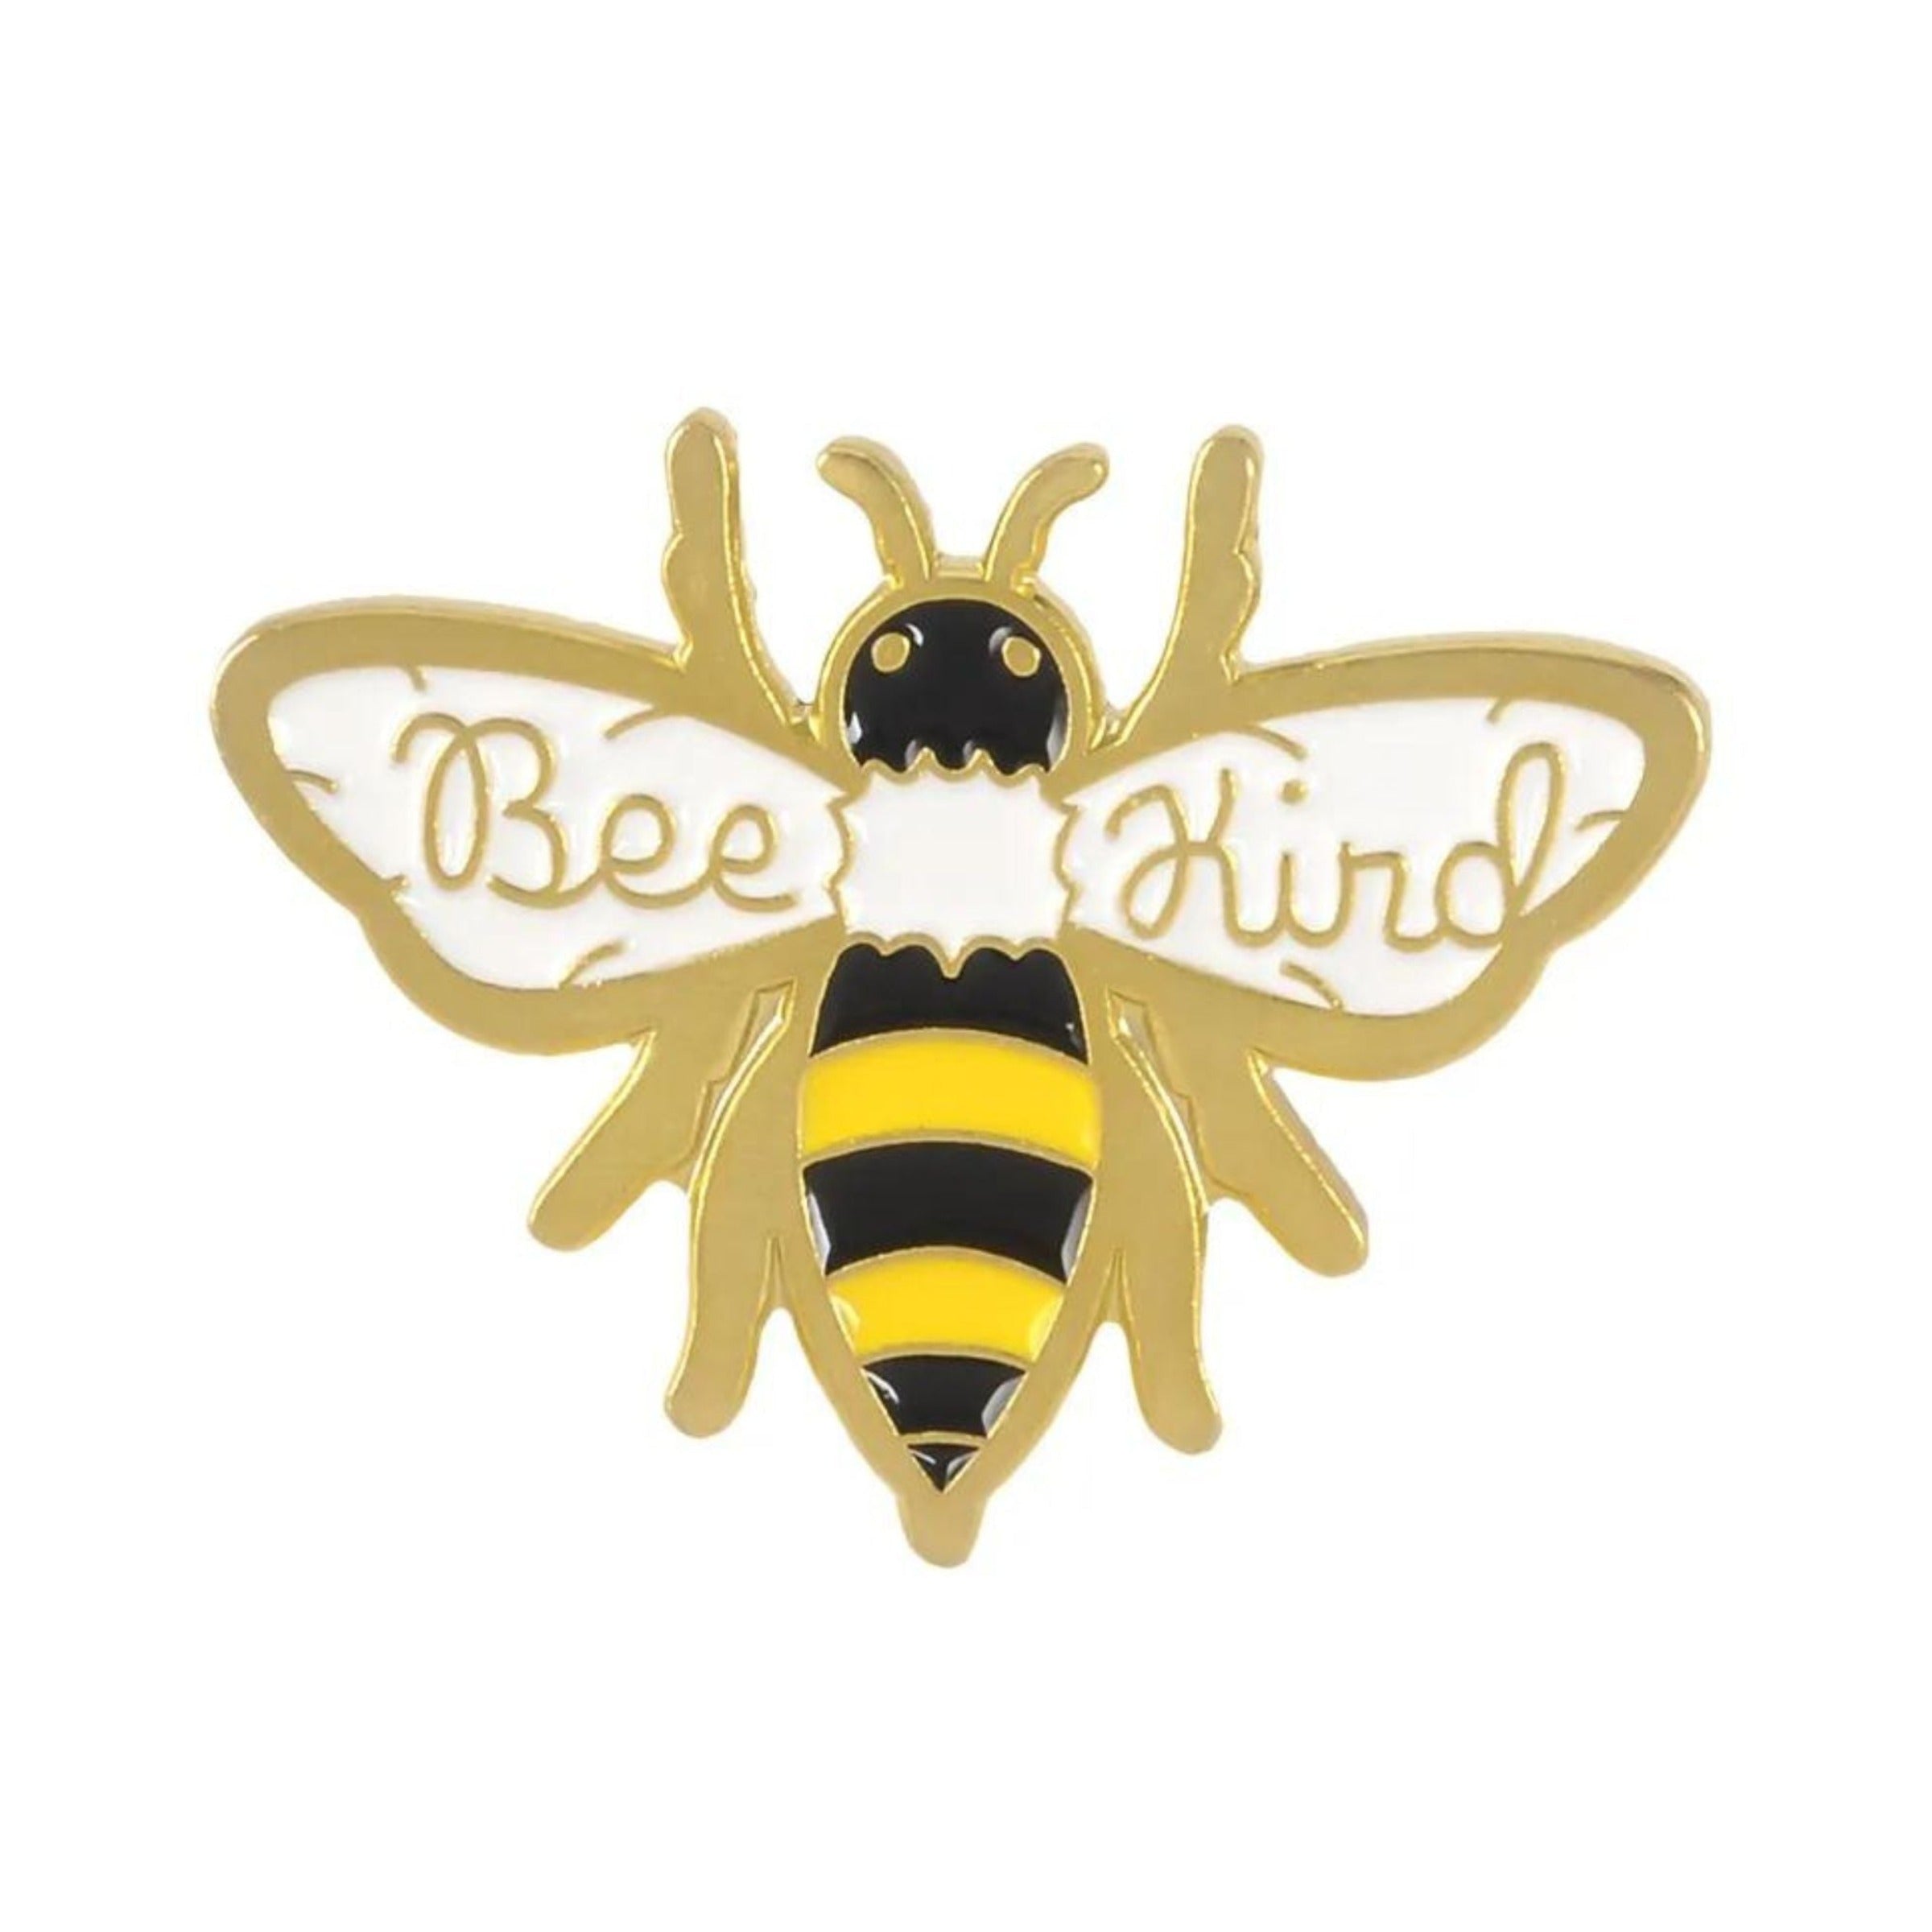 Bee Kind Enamel Pin Besom Boutique